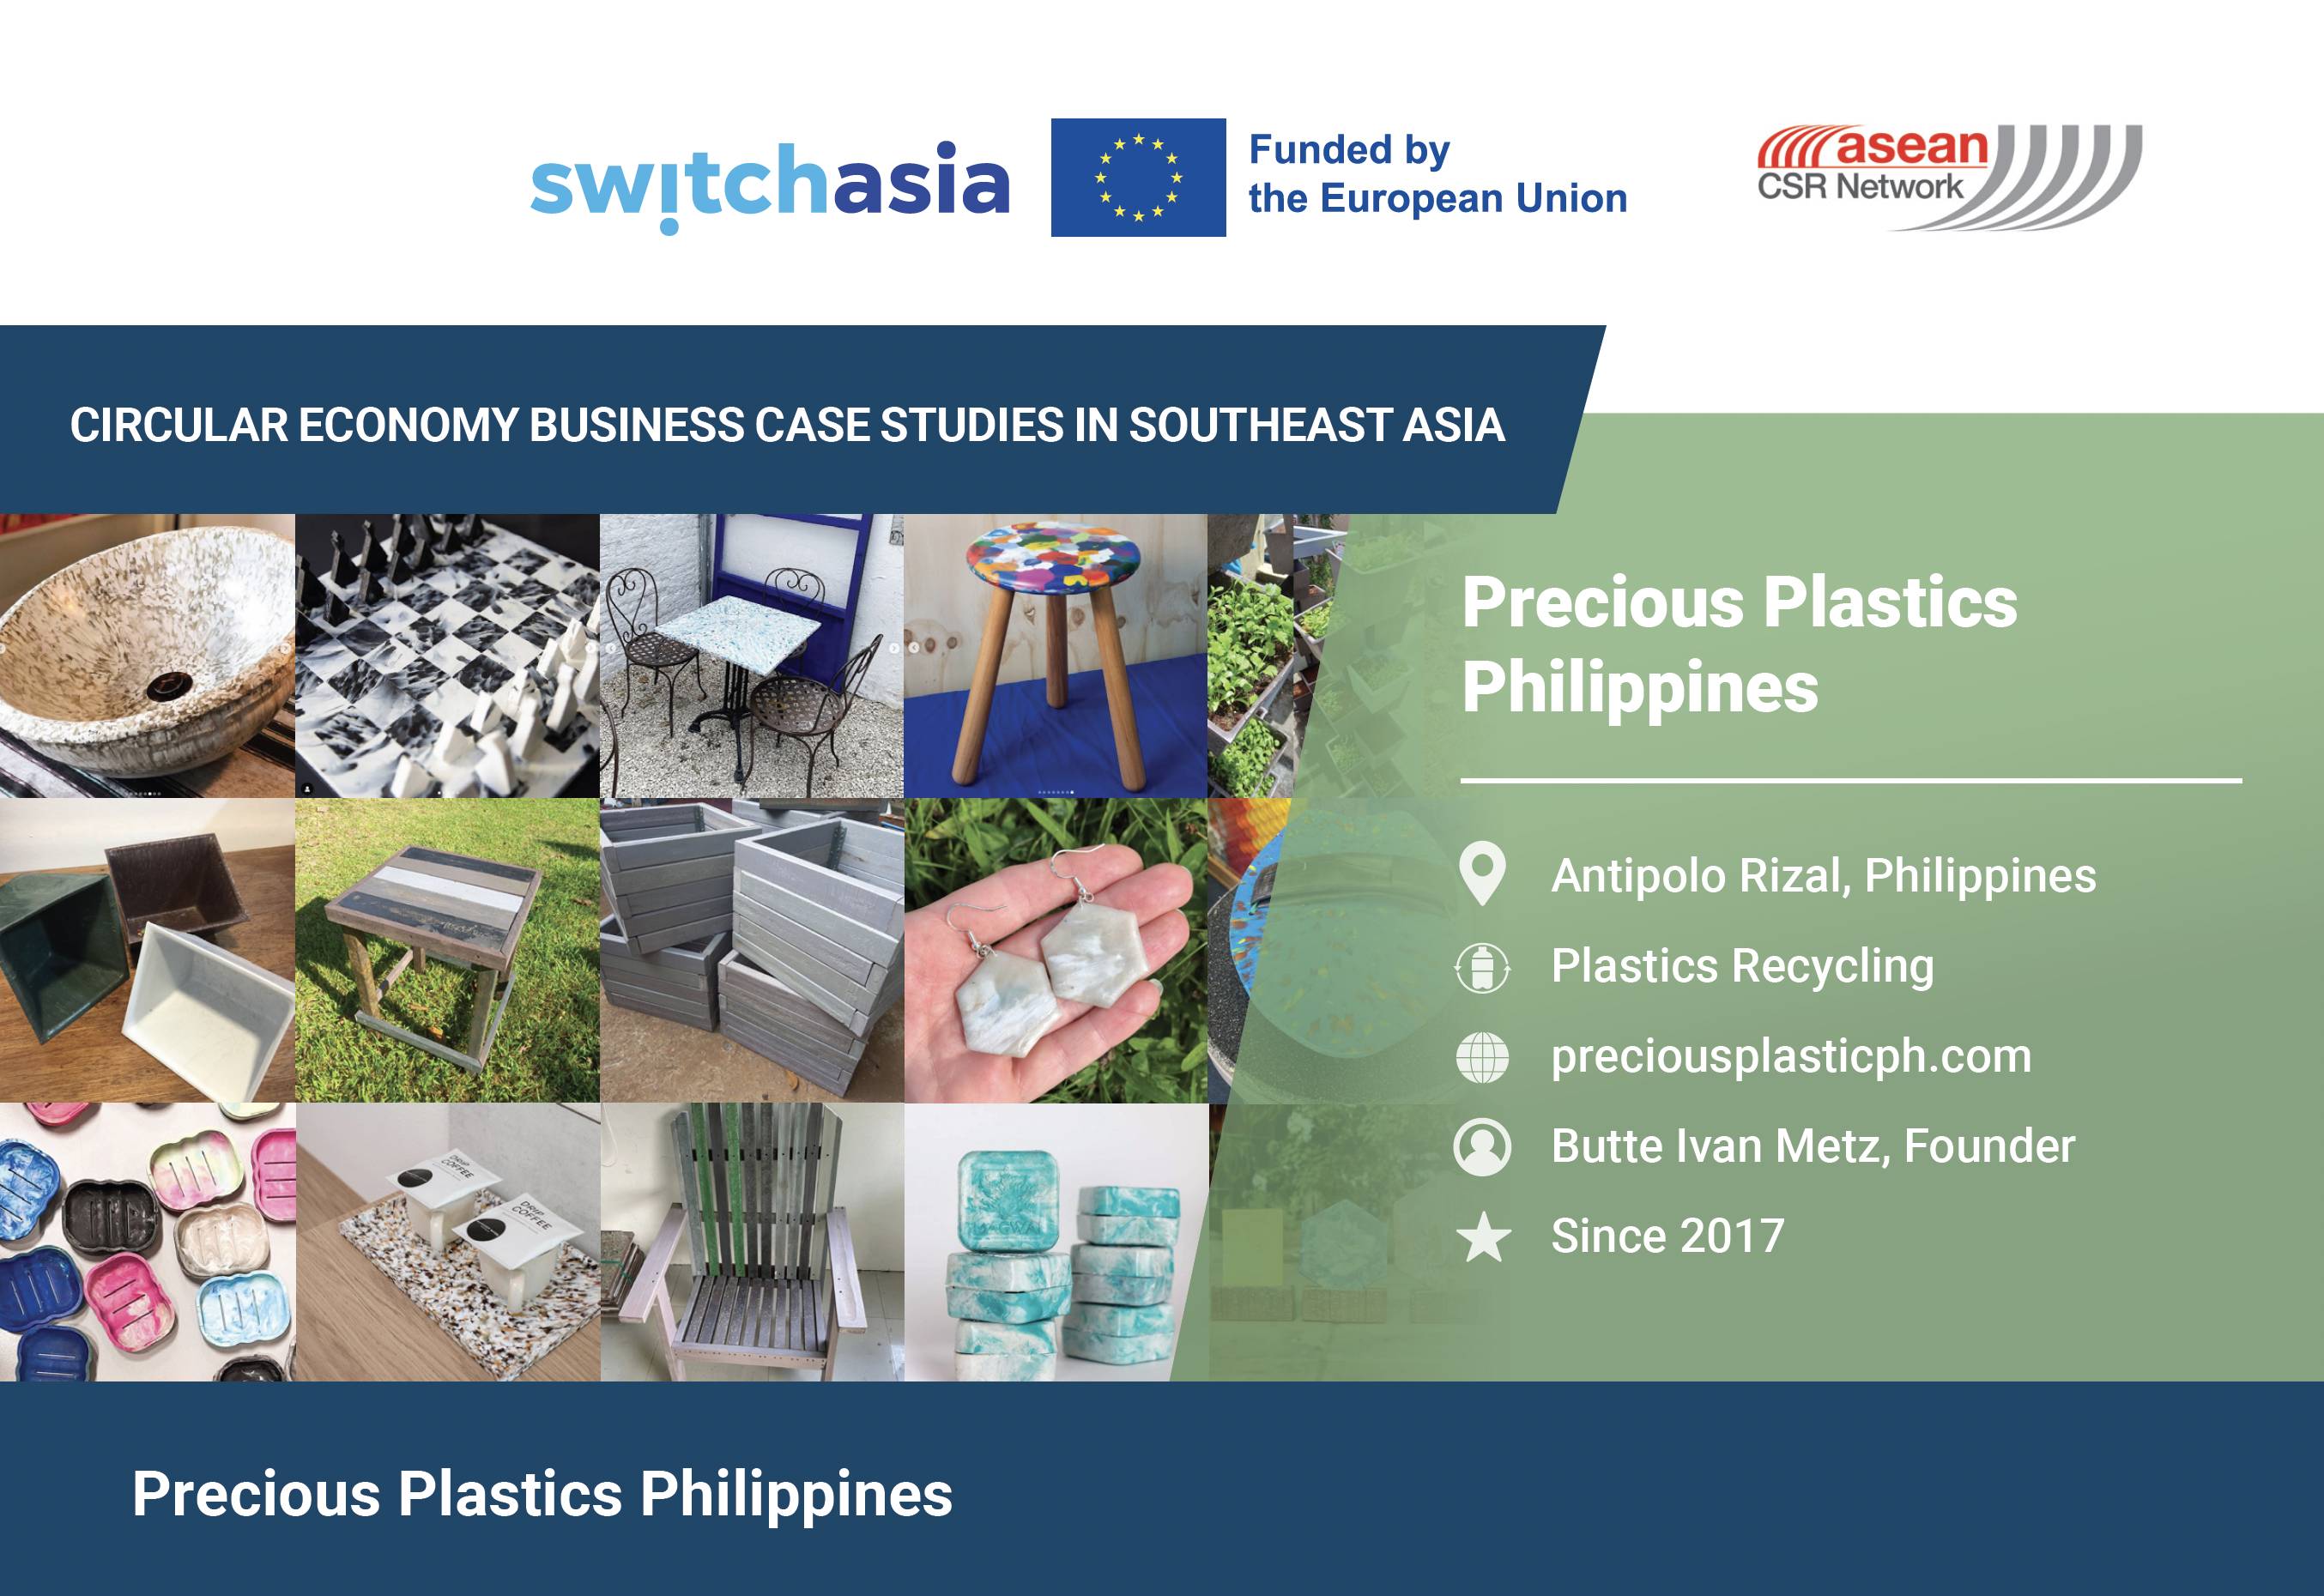 Precious Plastics Philippines4051